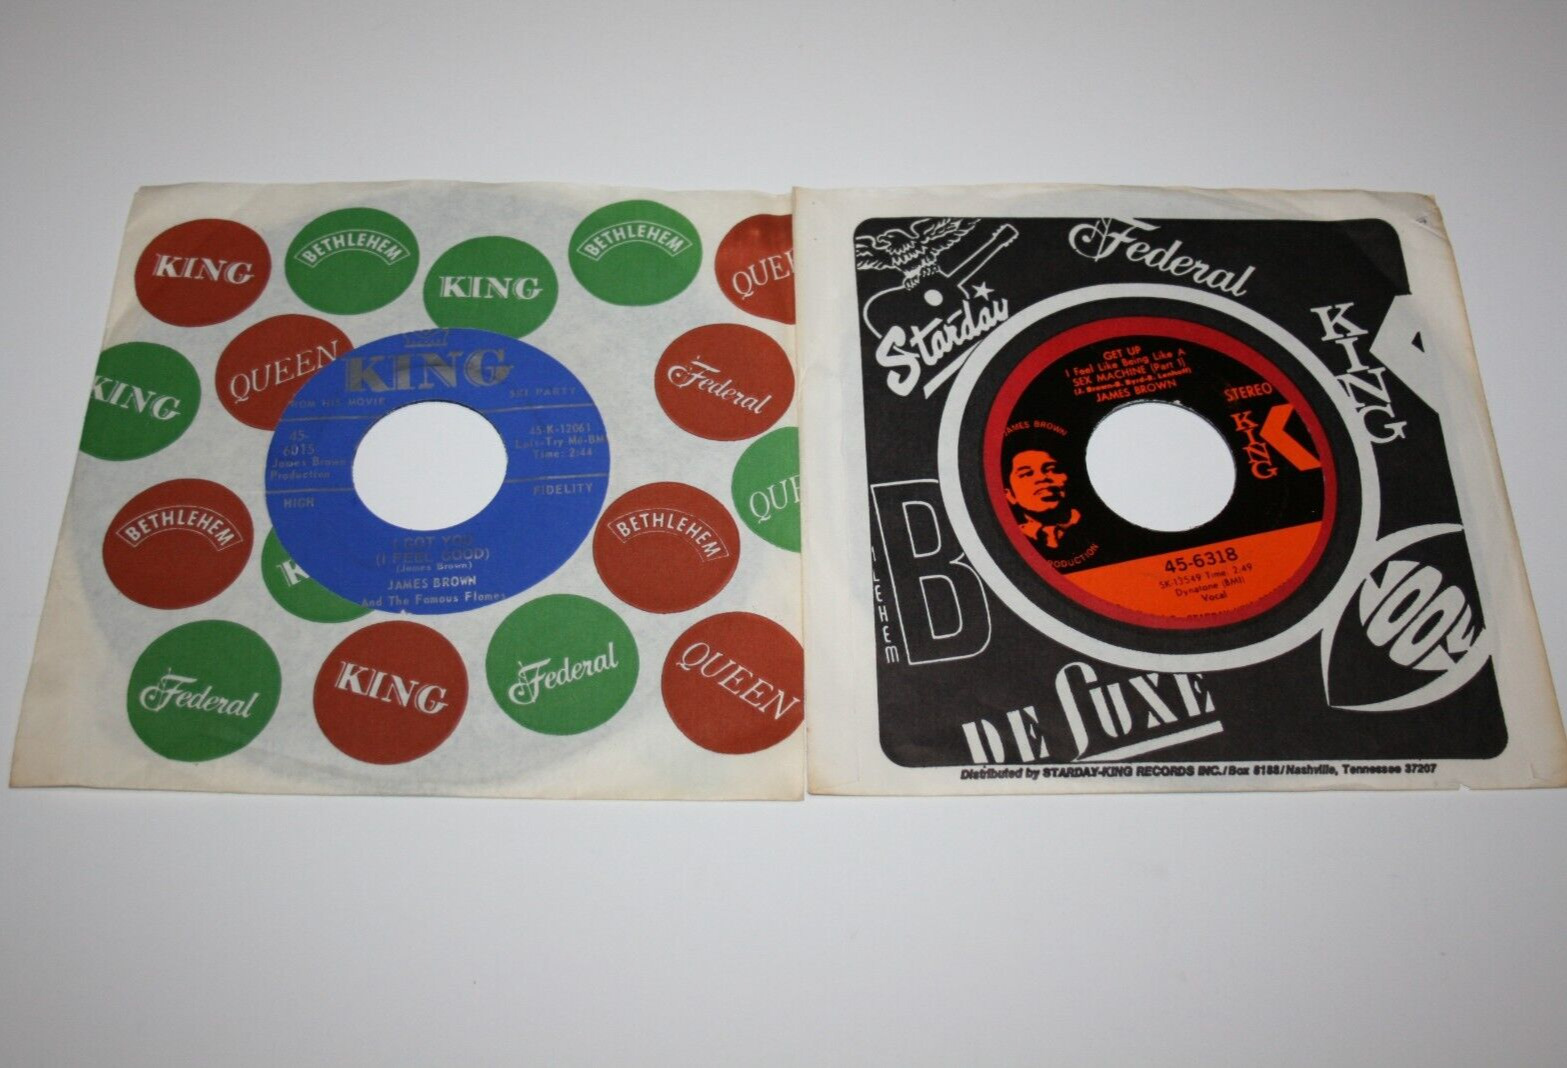 Lot of 2 vintage James Brown 45's - "I Got You" & "Get Up" w/original sleeves